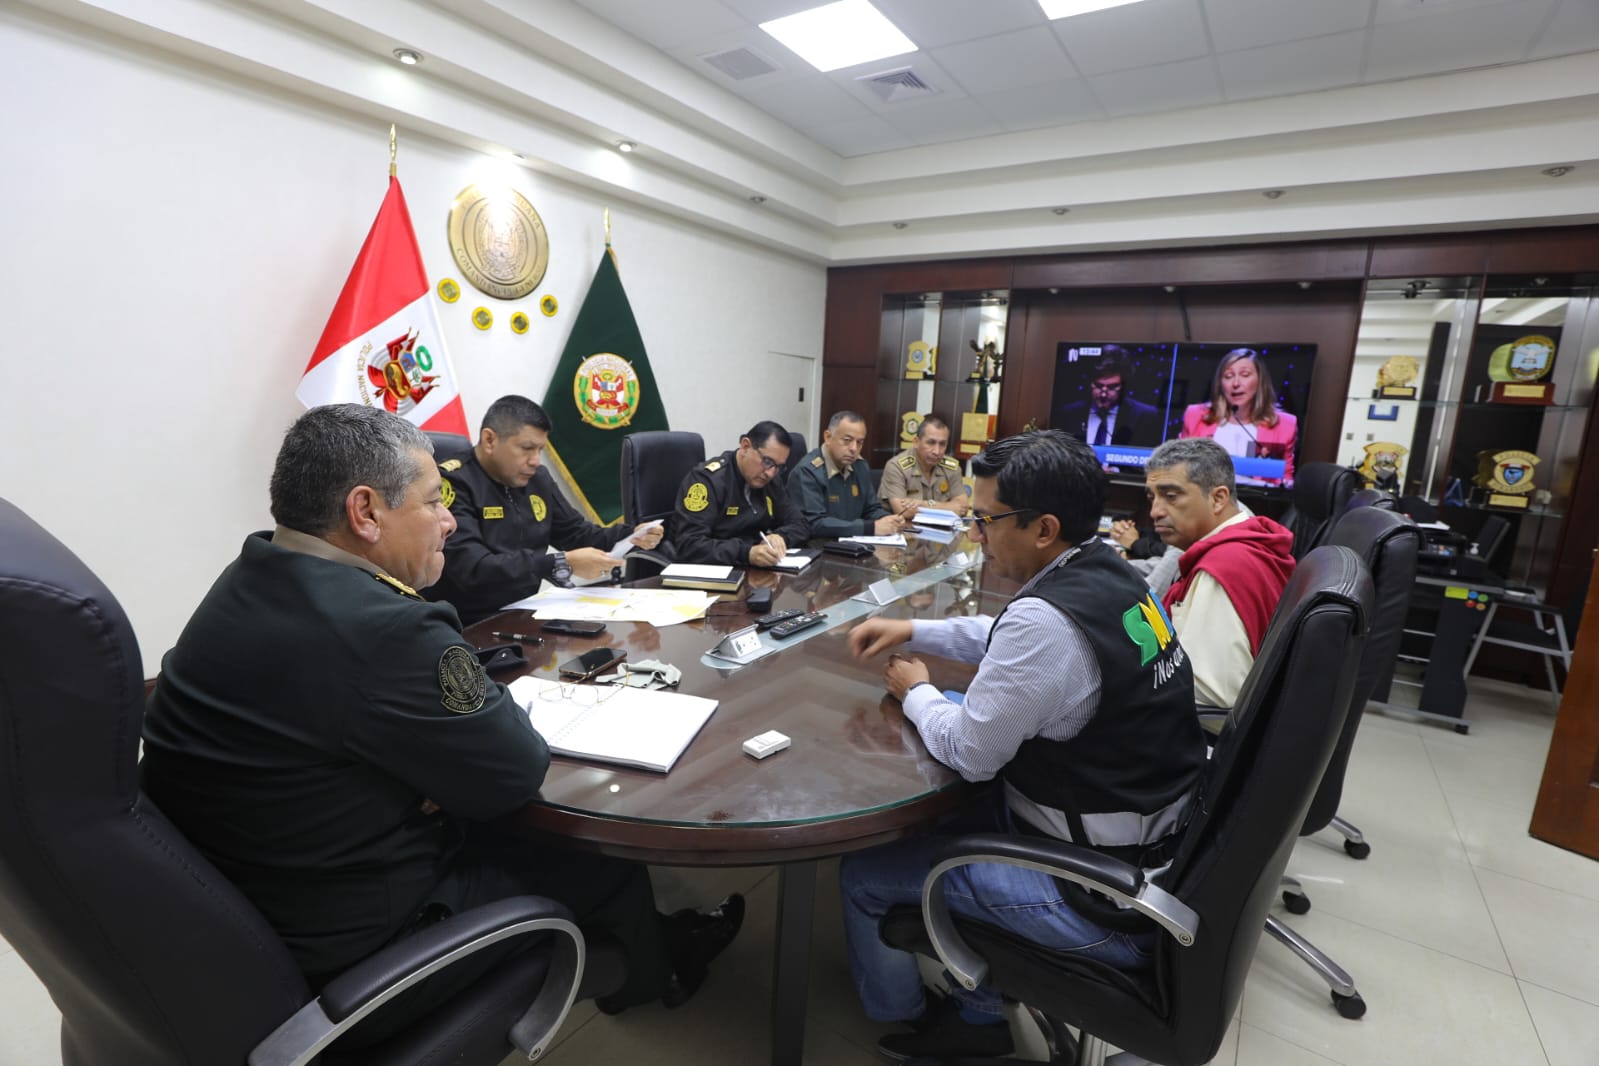 Alcalde de San Martín de Porres busca reforzar seguridad durante el estado de emergencia